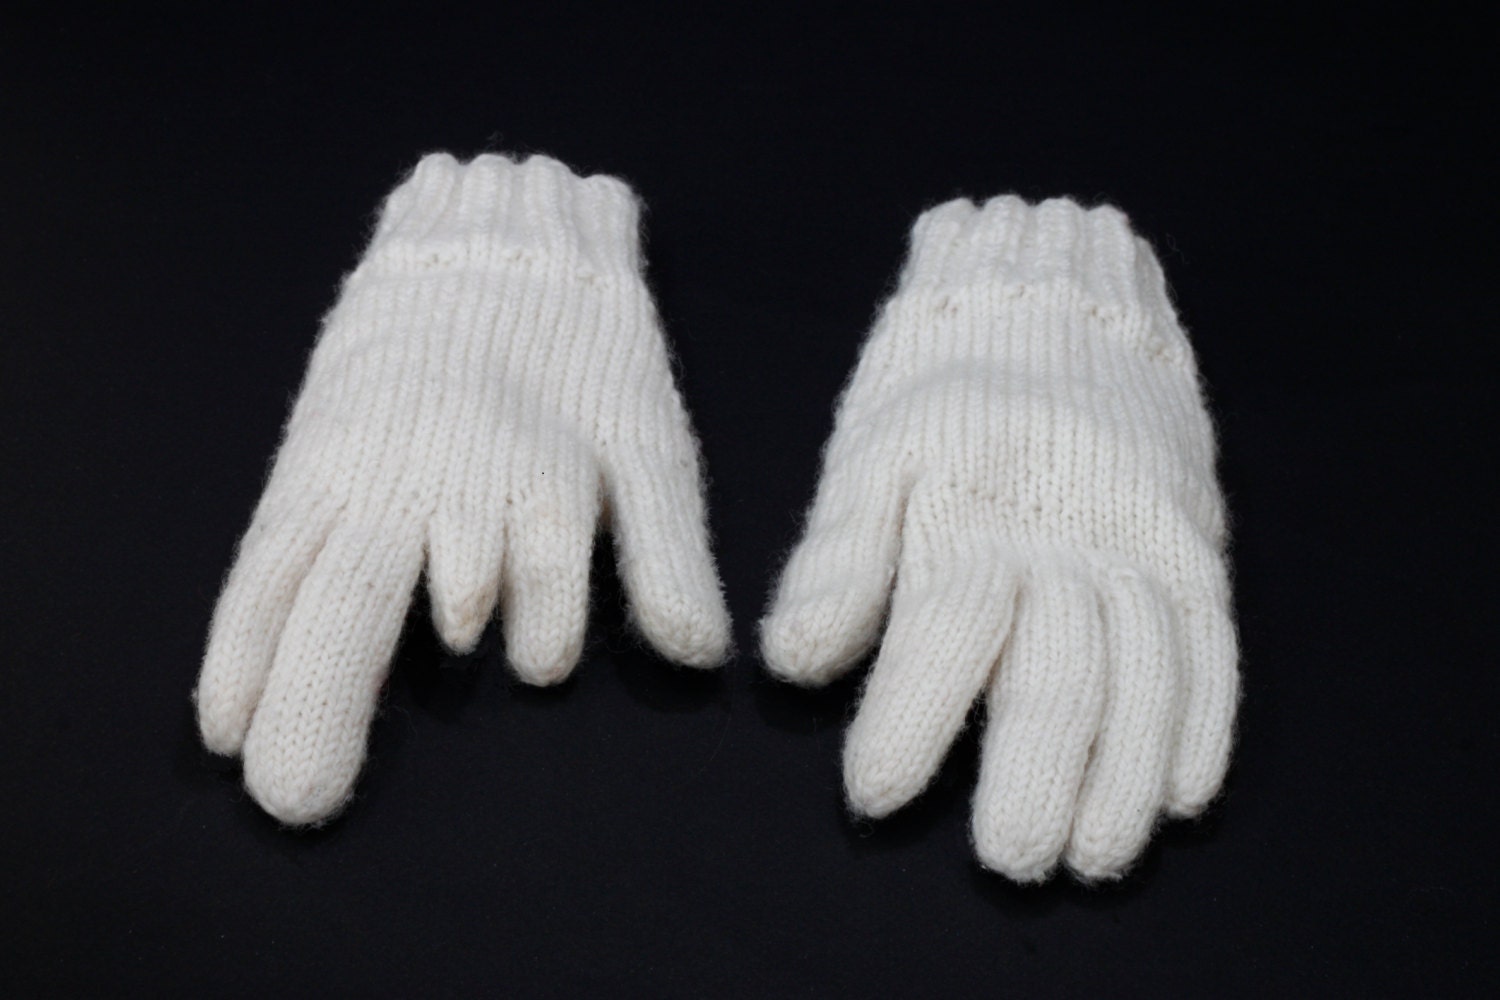 Anti-statische handschoenen Craftmaterialen & Gereedschappen 